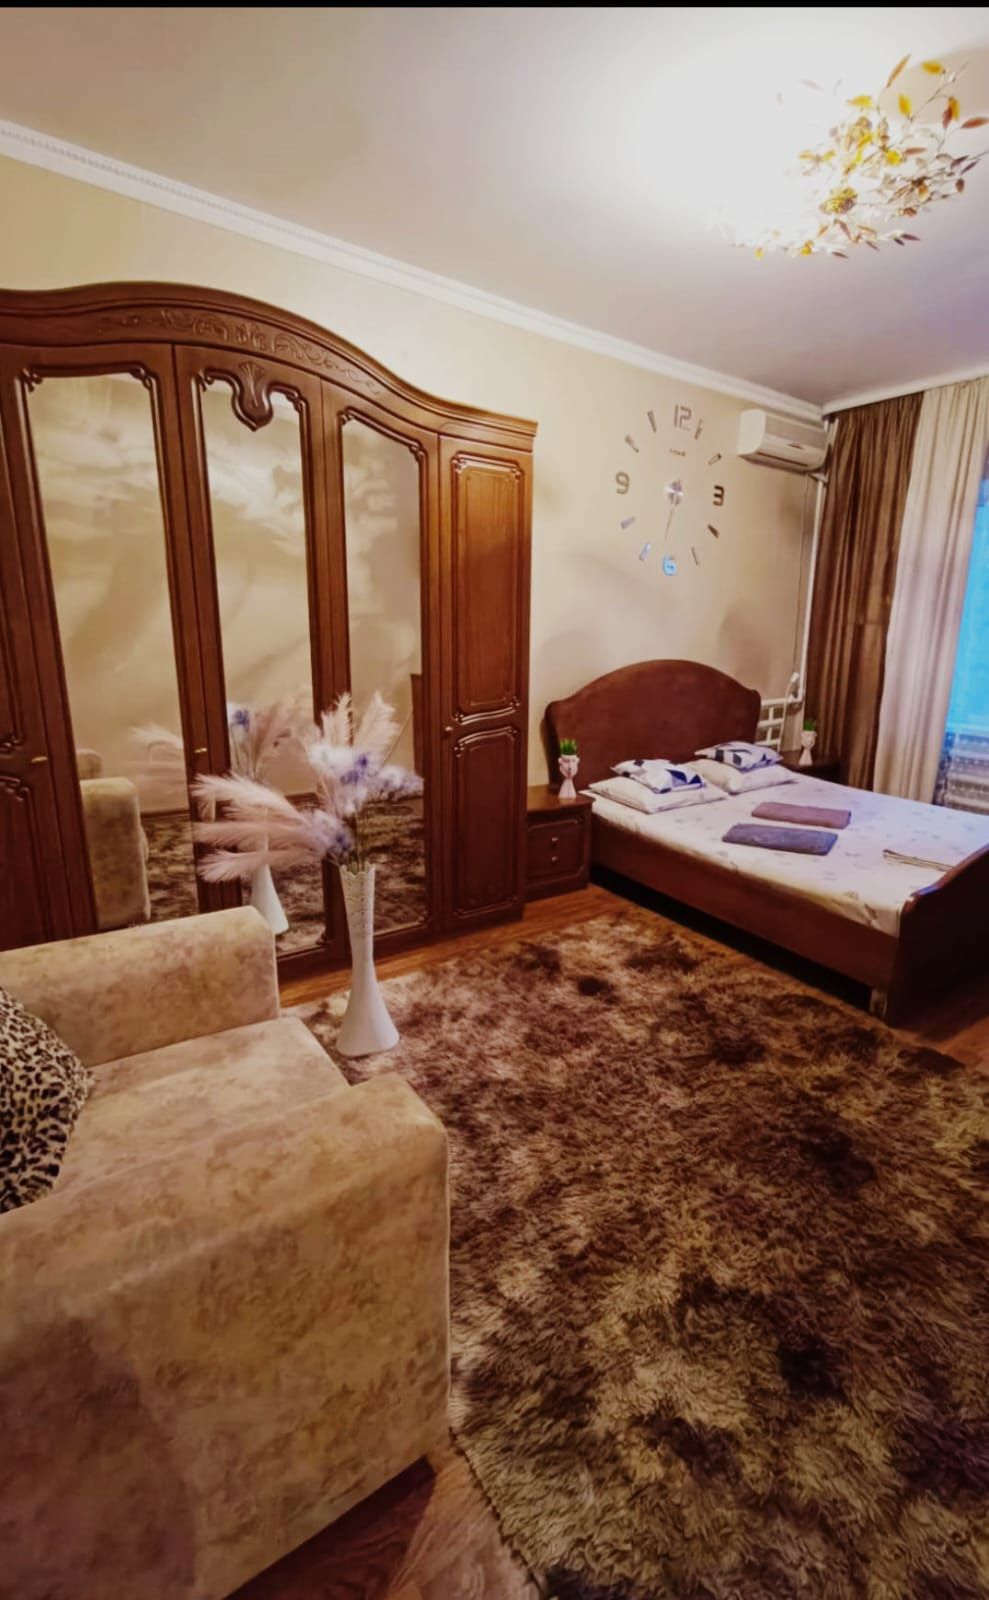 Квартира по суточна 1- комнатная, Smart TV, Wi-Fi  Кондиционер Аристон